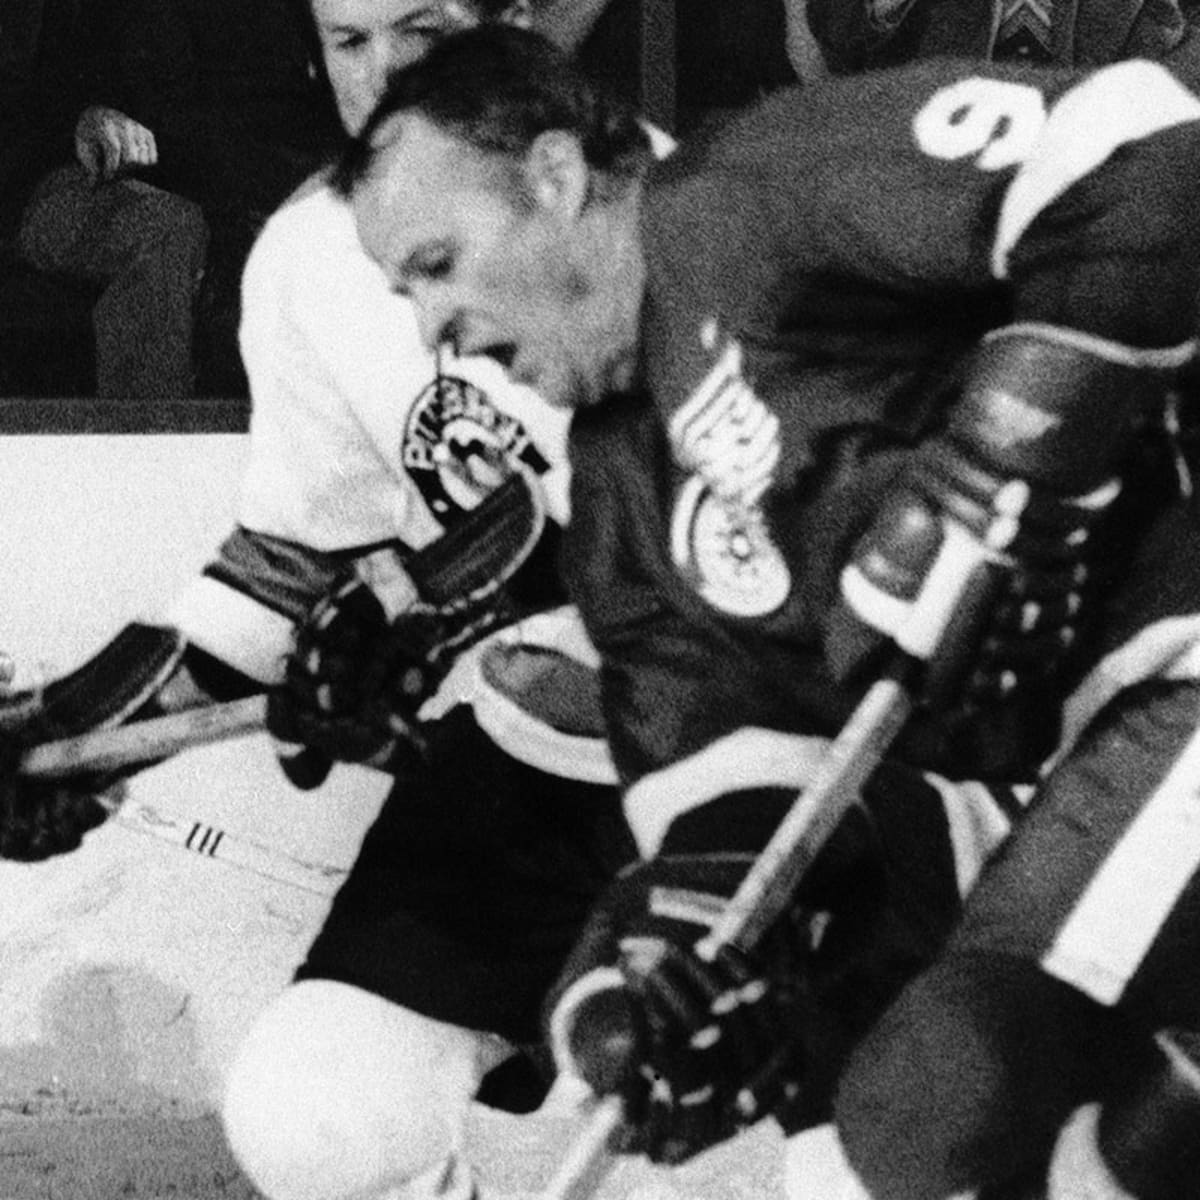 Gordie Howe Detroit Red Wings Mens Red Vintage Breakaway Hockey